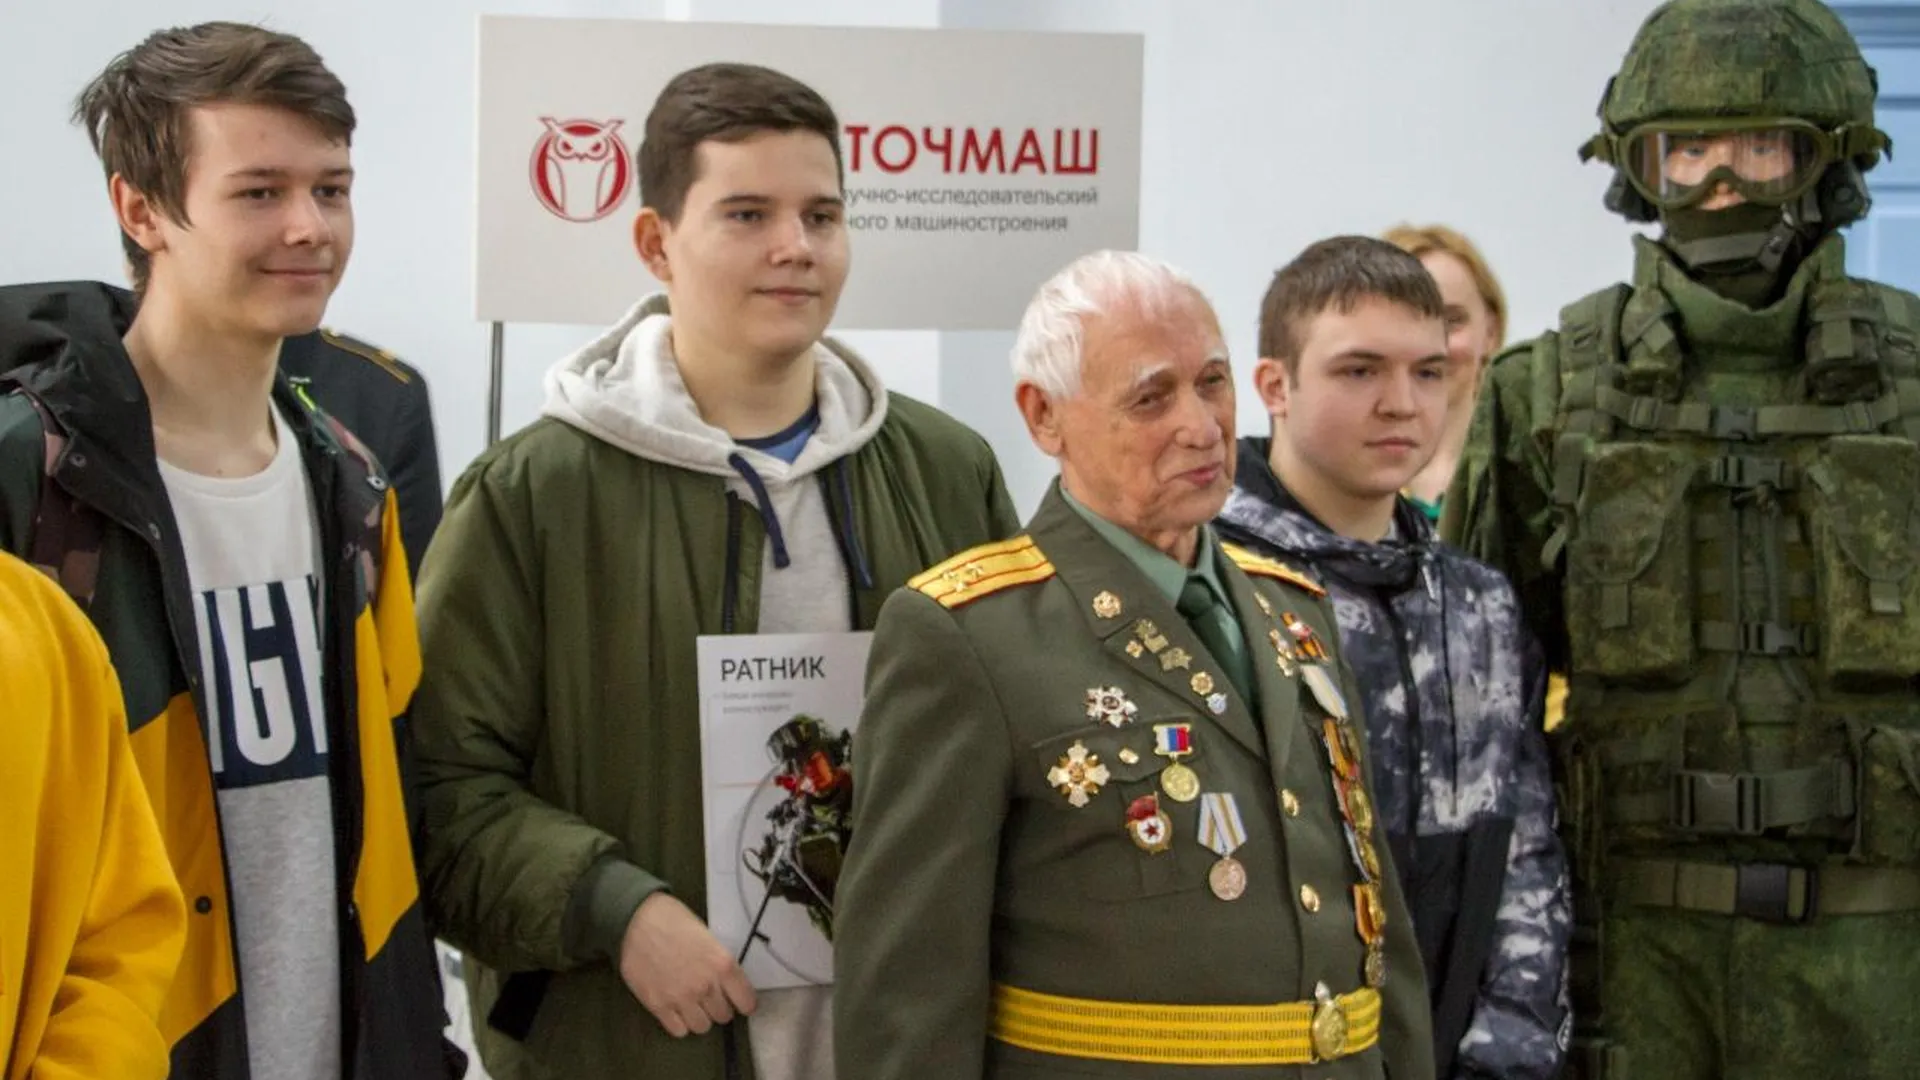 ЦНИИТОЧМАШ Подольска представил боевую экипировку «Ратник» на Дне призывника